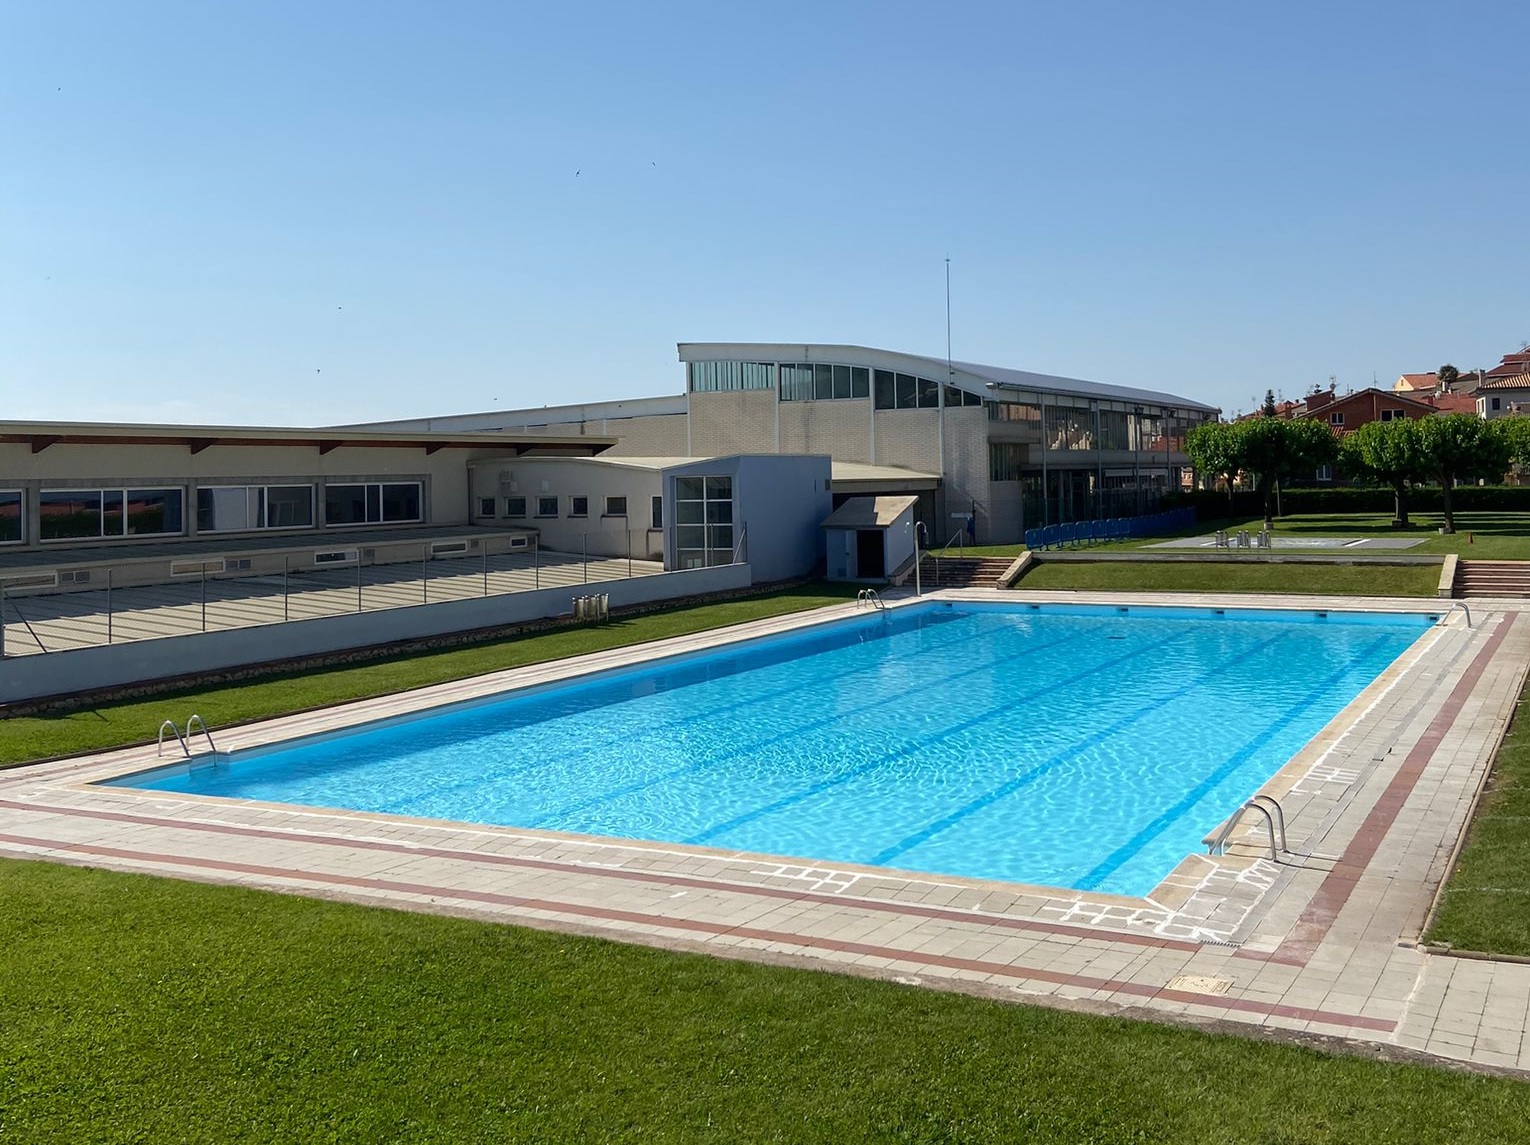 Berga aplica la gratuïtat a les piscines municipals durant la tarda per l'onada de calor prevista els pròxims dies a la ciutat